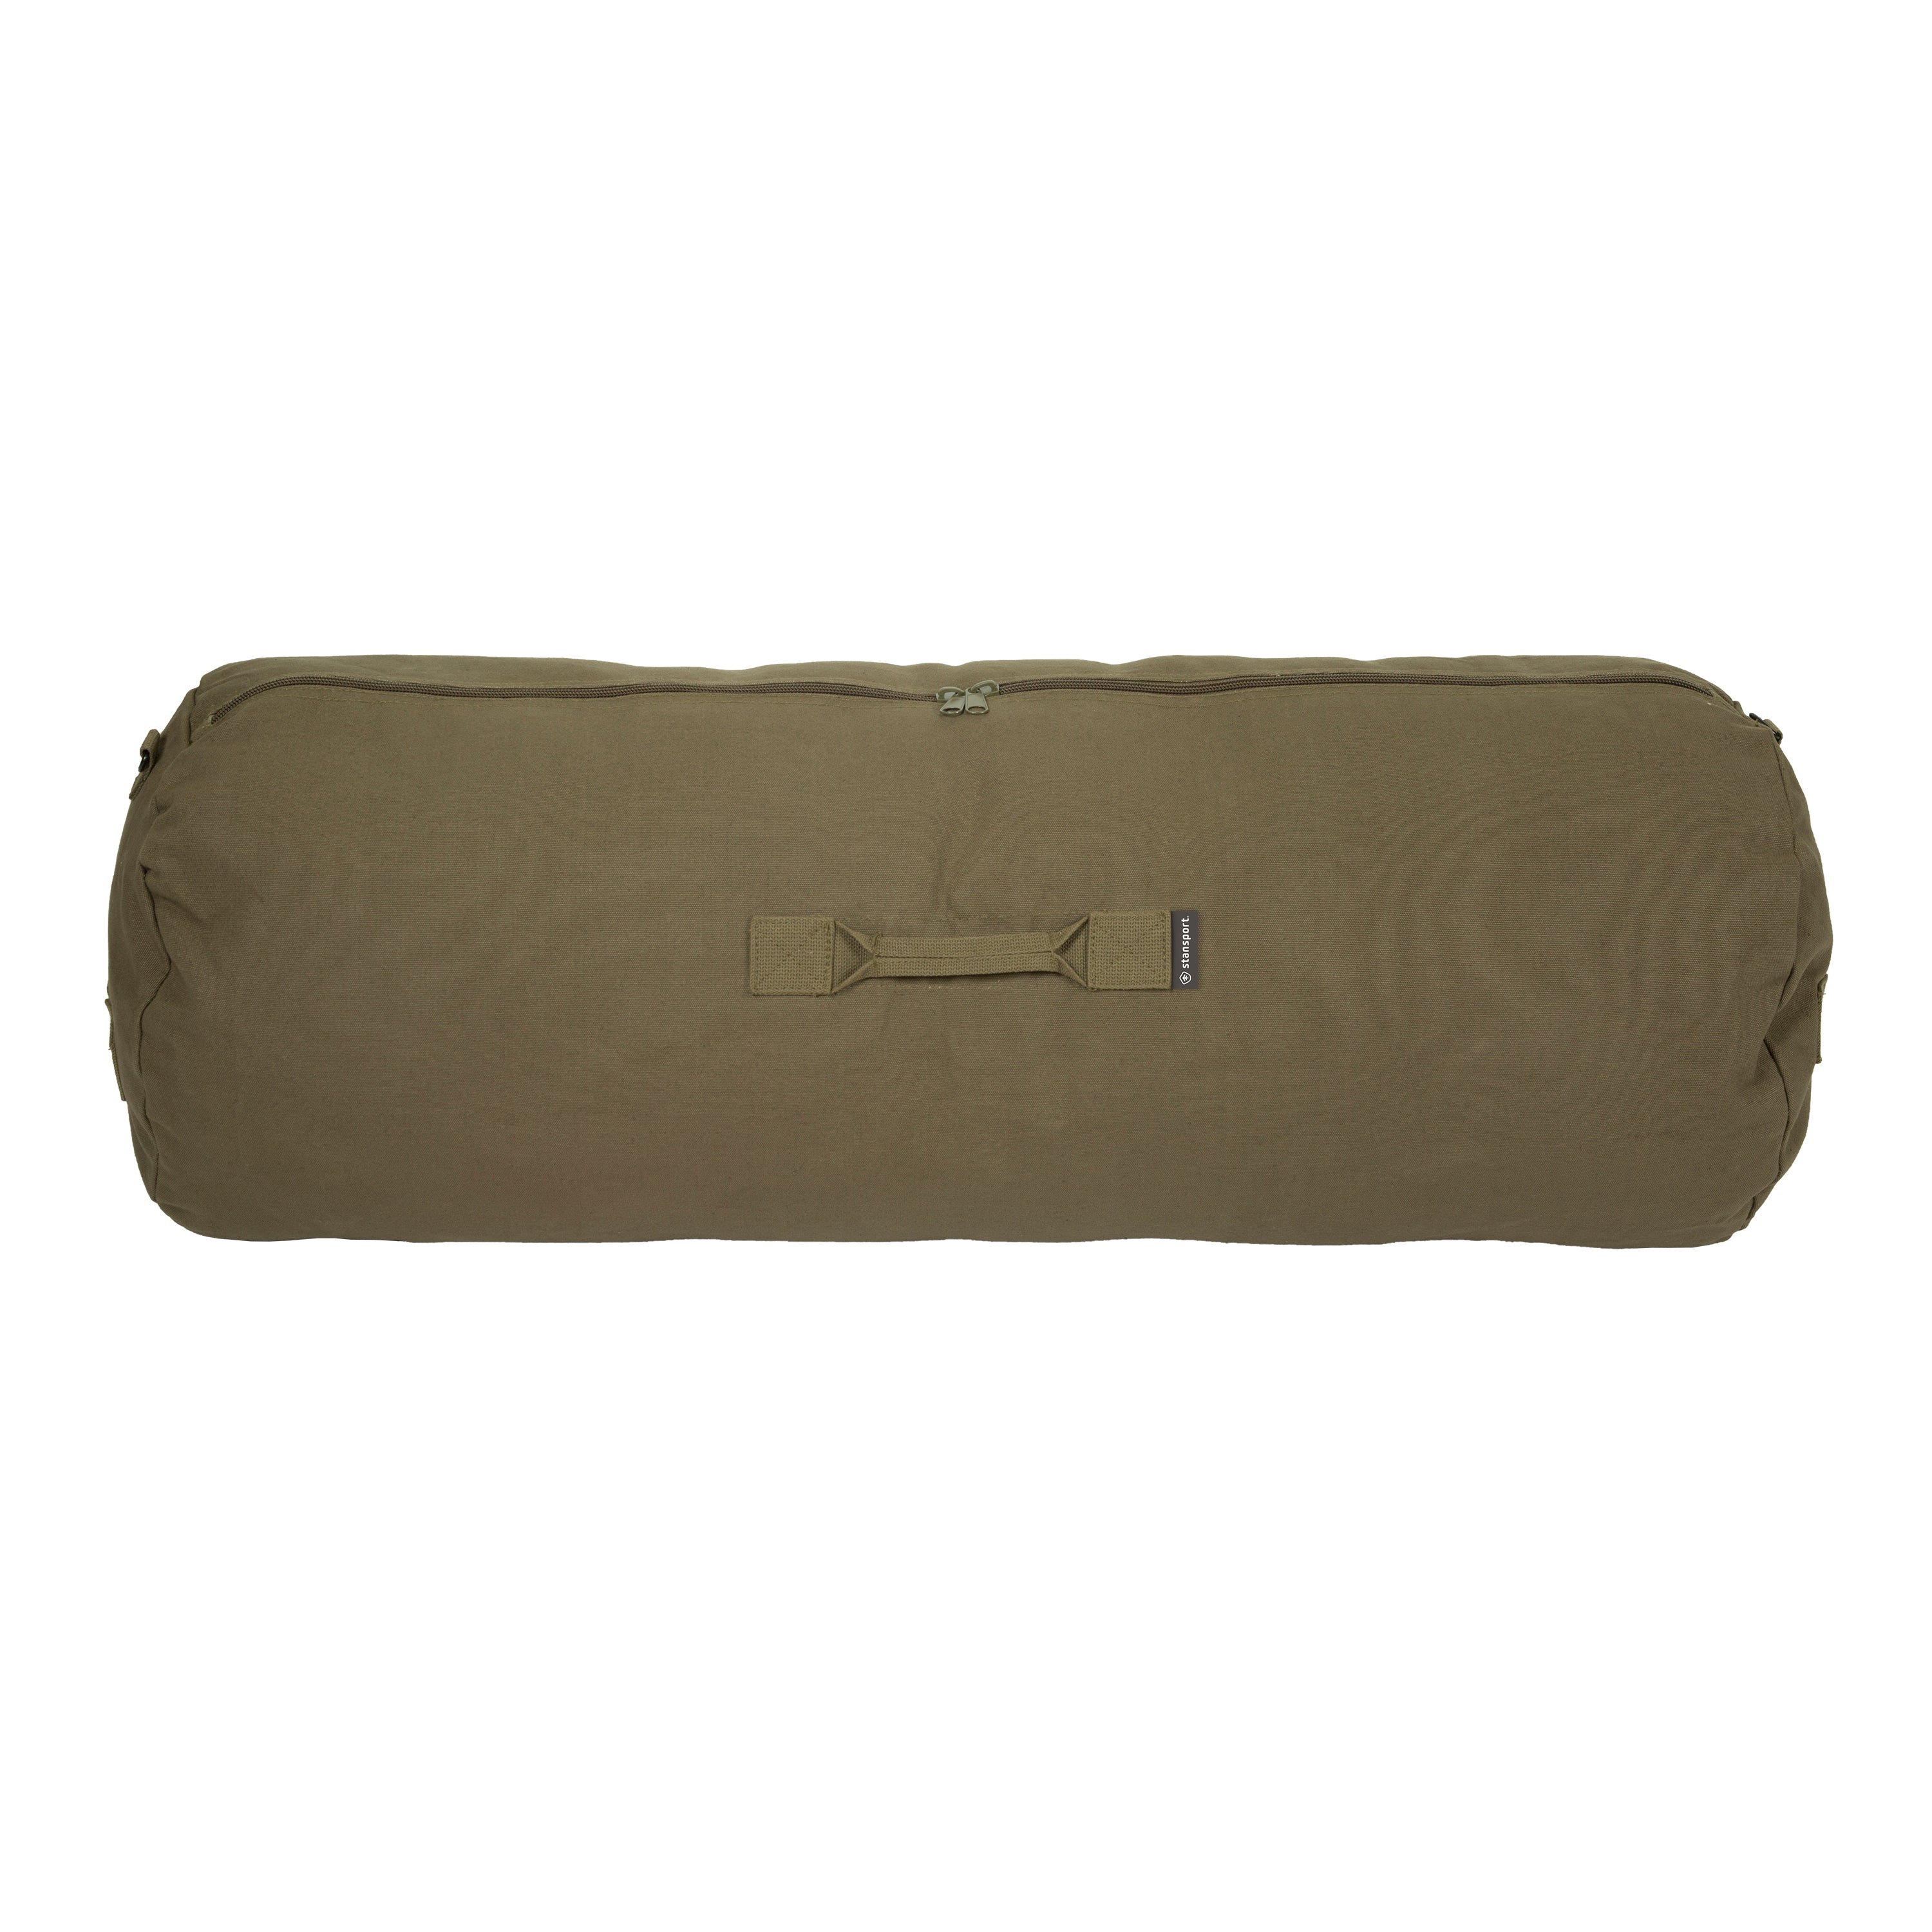 Duffel Bag With Zipper - O.D. - 42 In X 15 In X 15 In